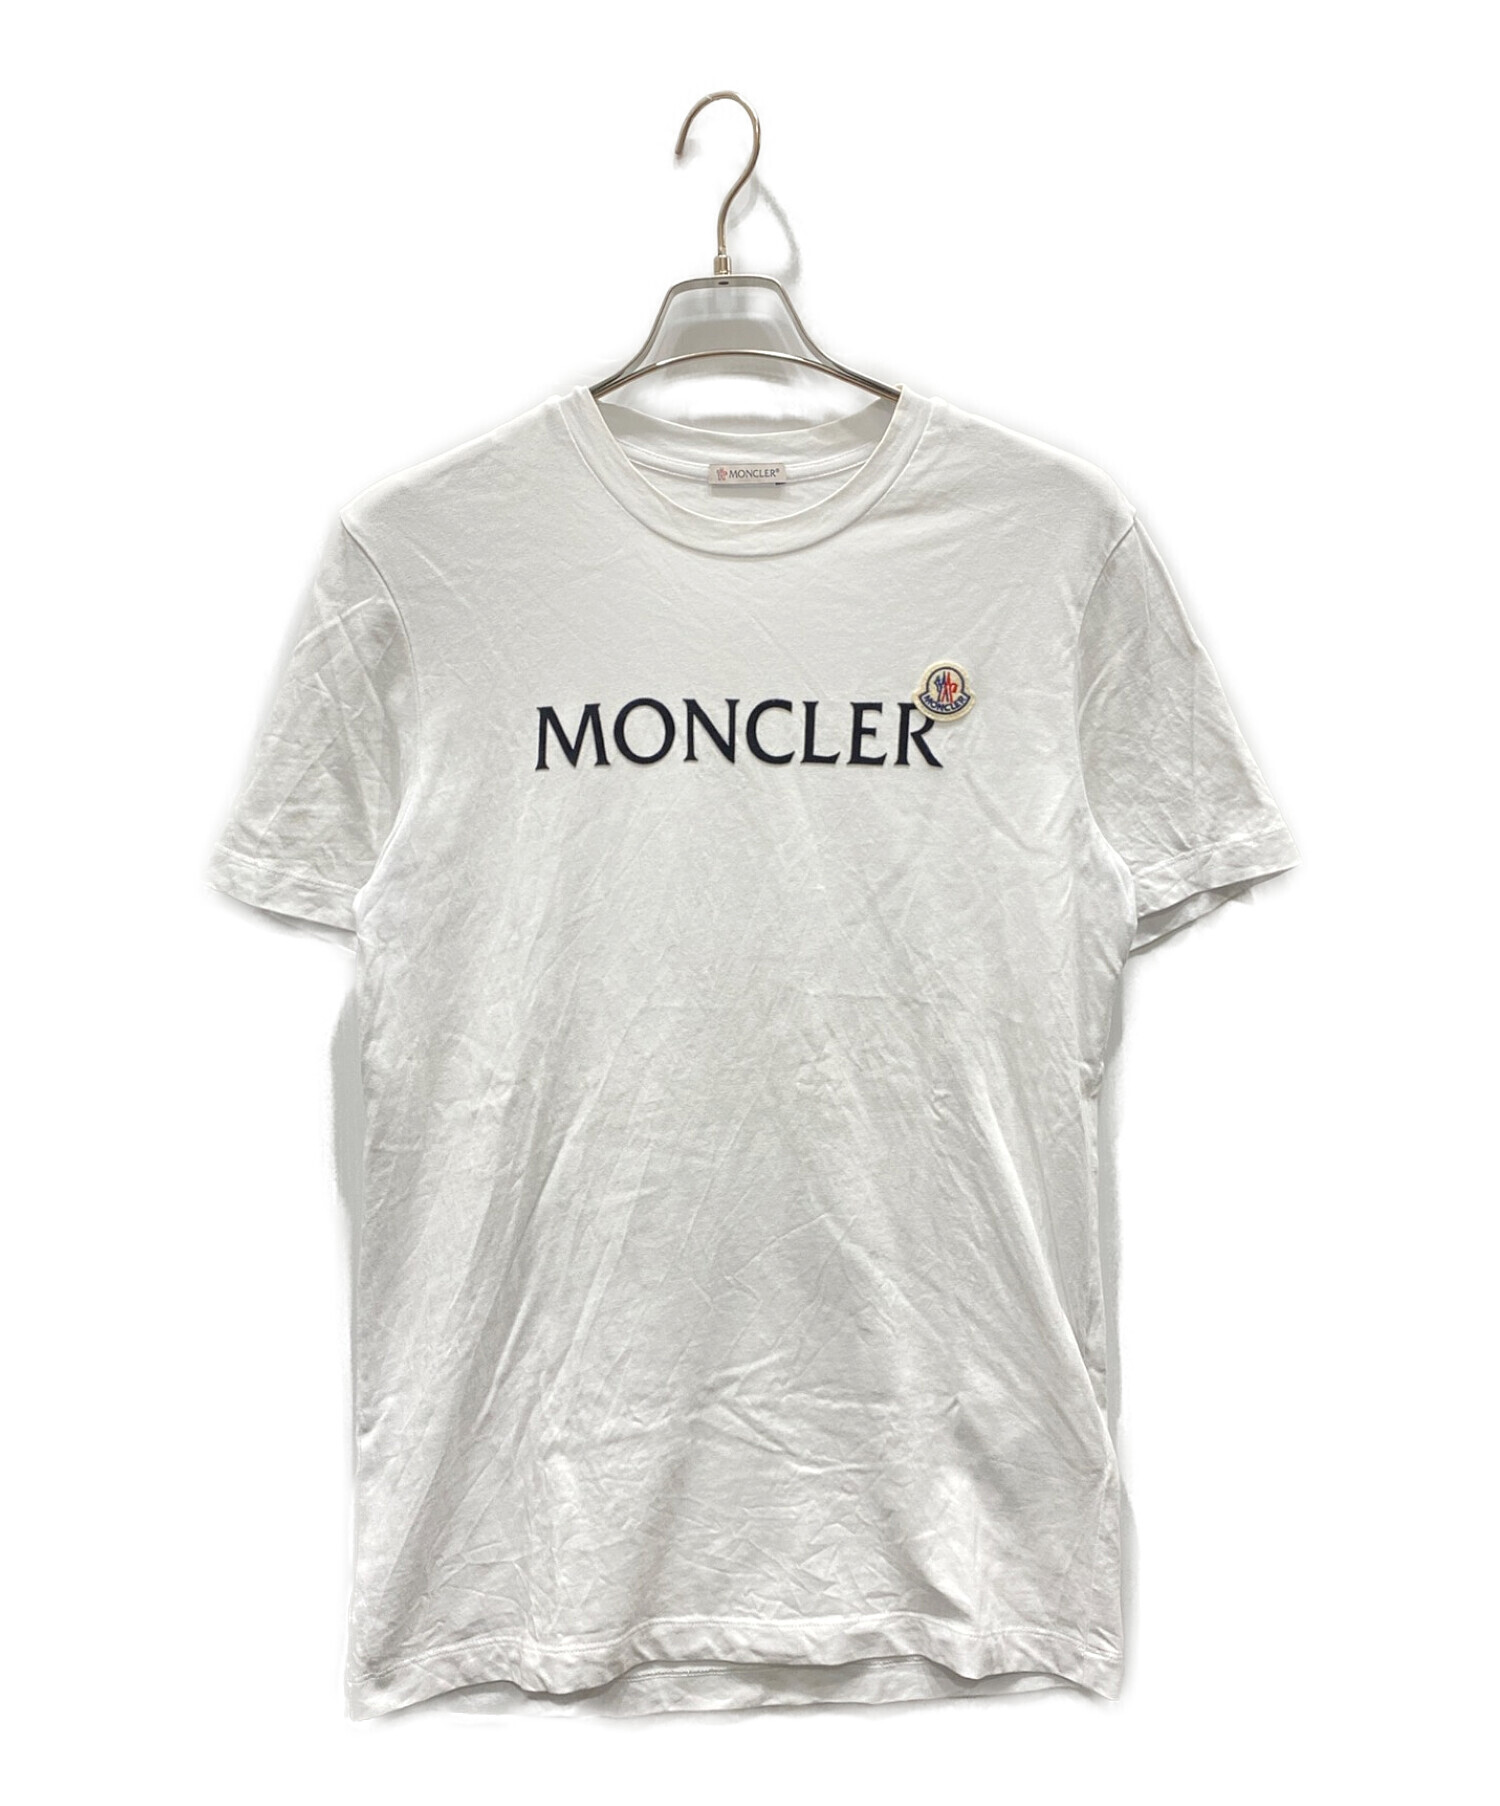 MONCLER (モンクレール) ロゴワッペンTシャツ ホワイト サイズ:S